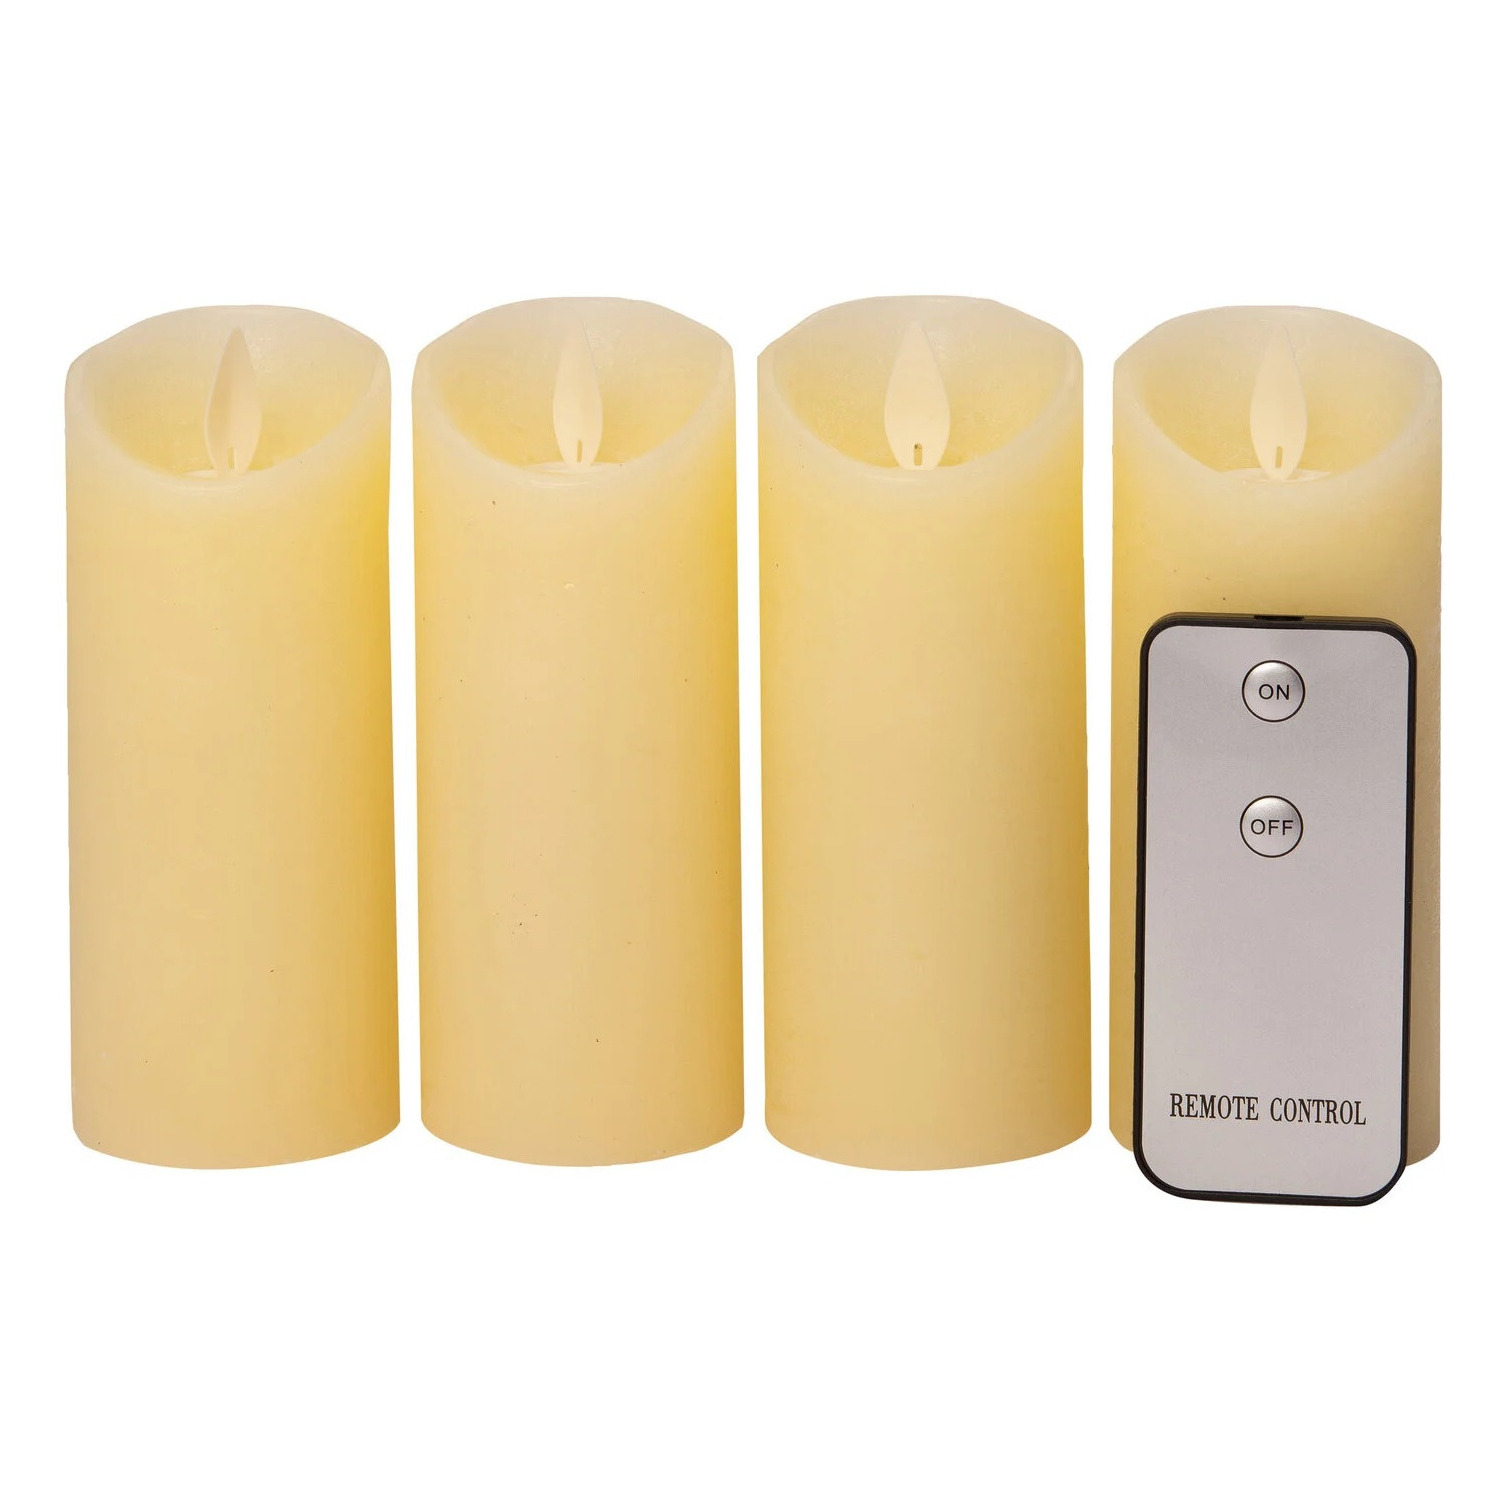 4x stuks led kaarsen-stompkaarsen ivoor wit D5,2 x H12,5 cm